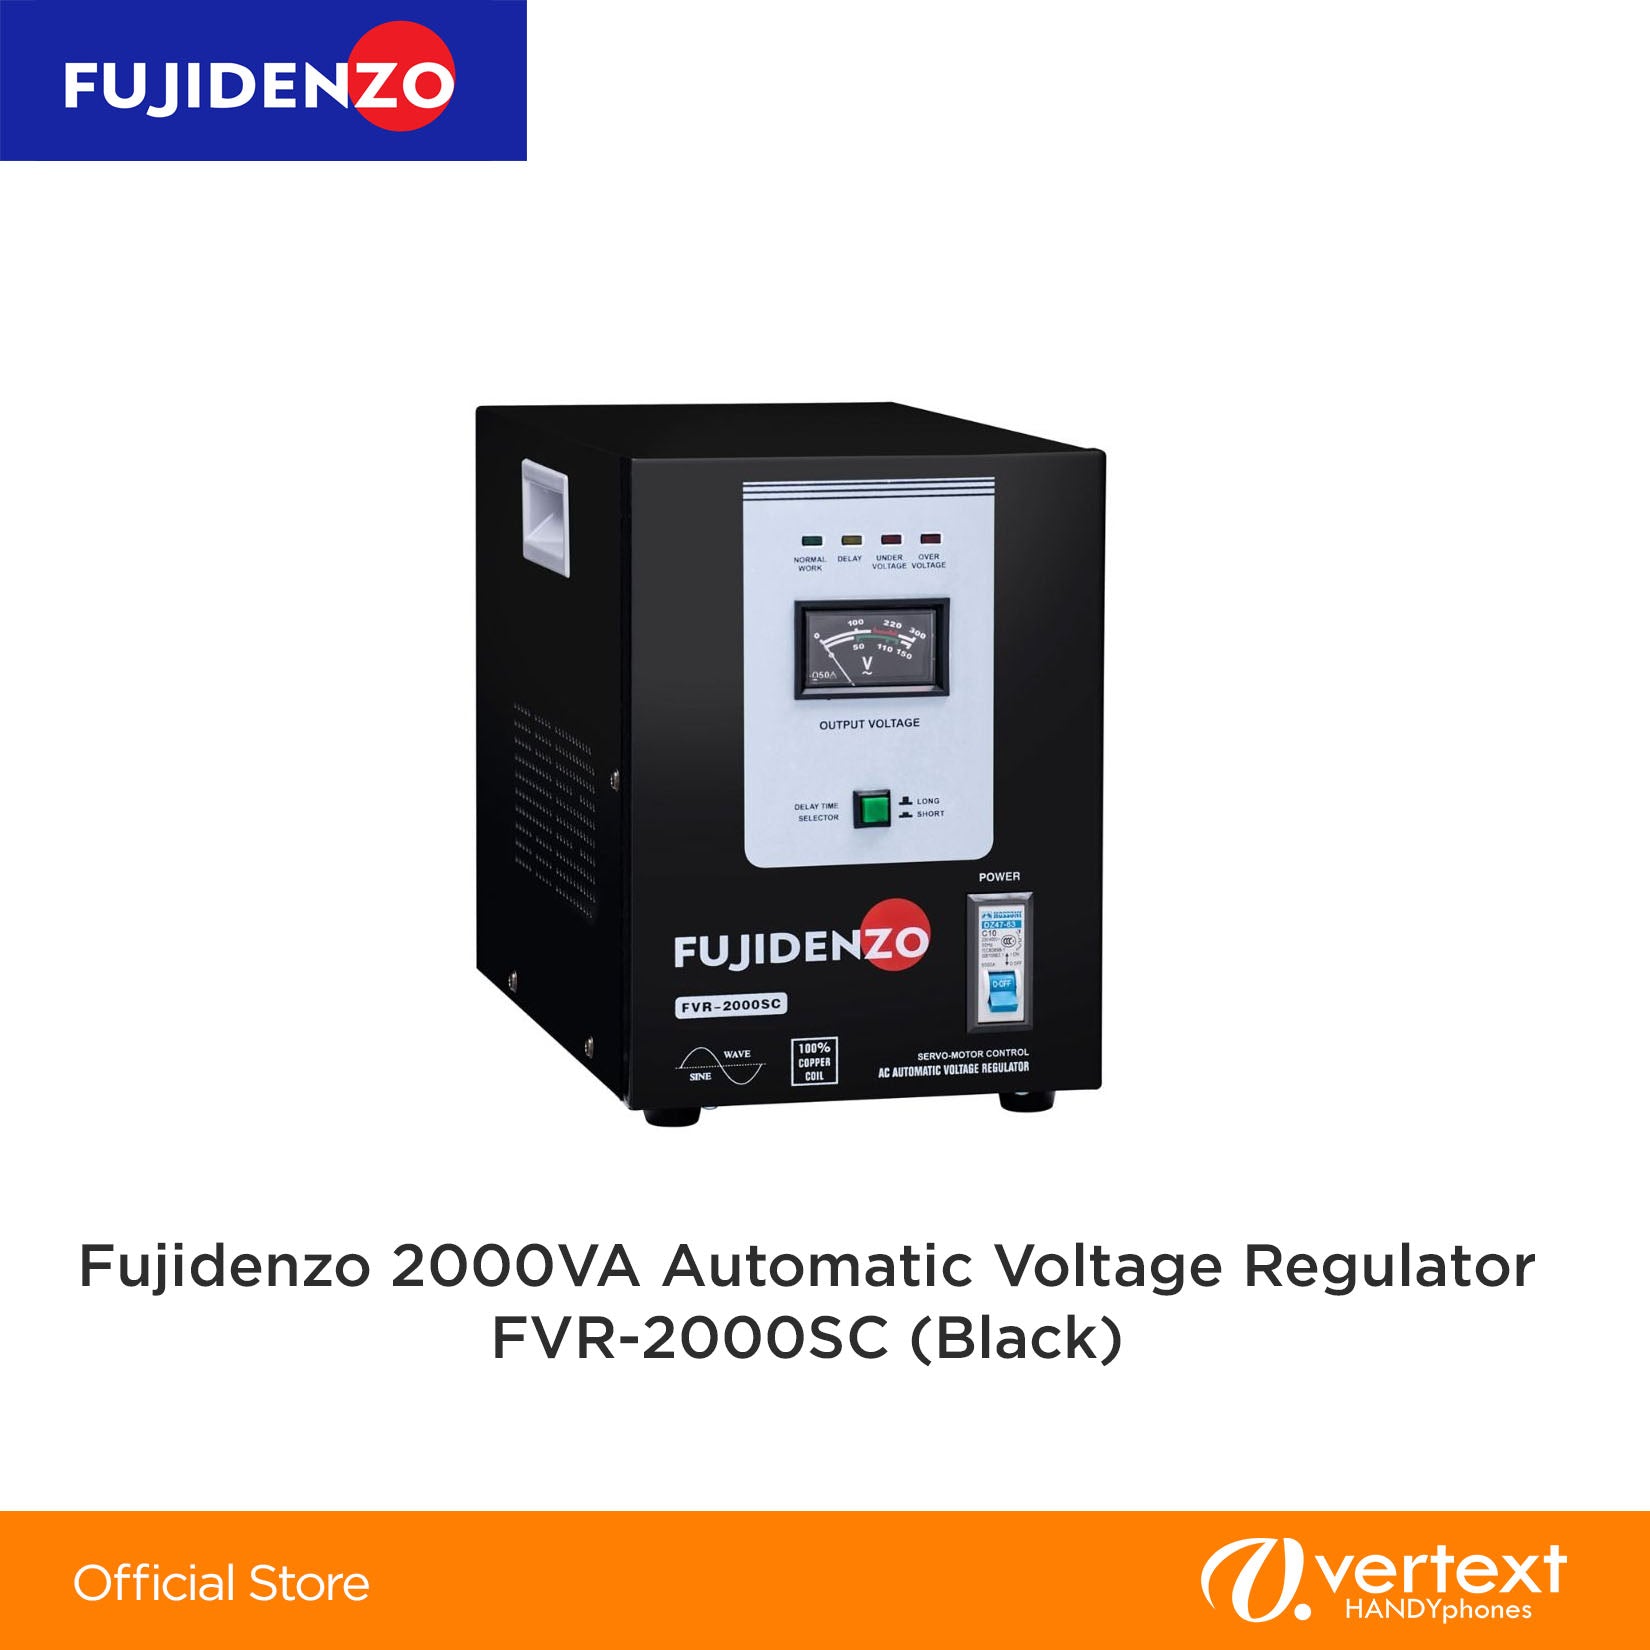 Fujidenzo FVR-2000SC